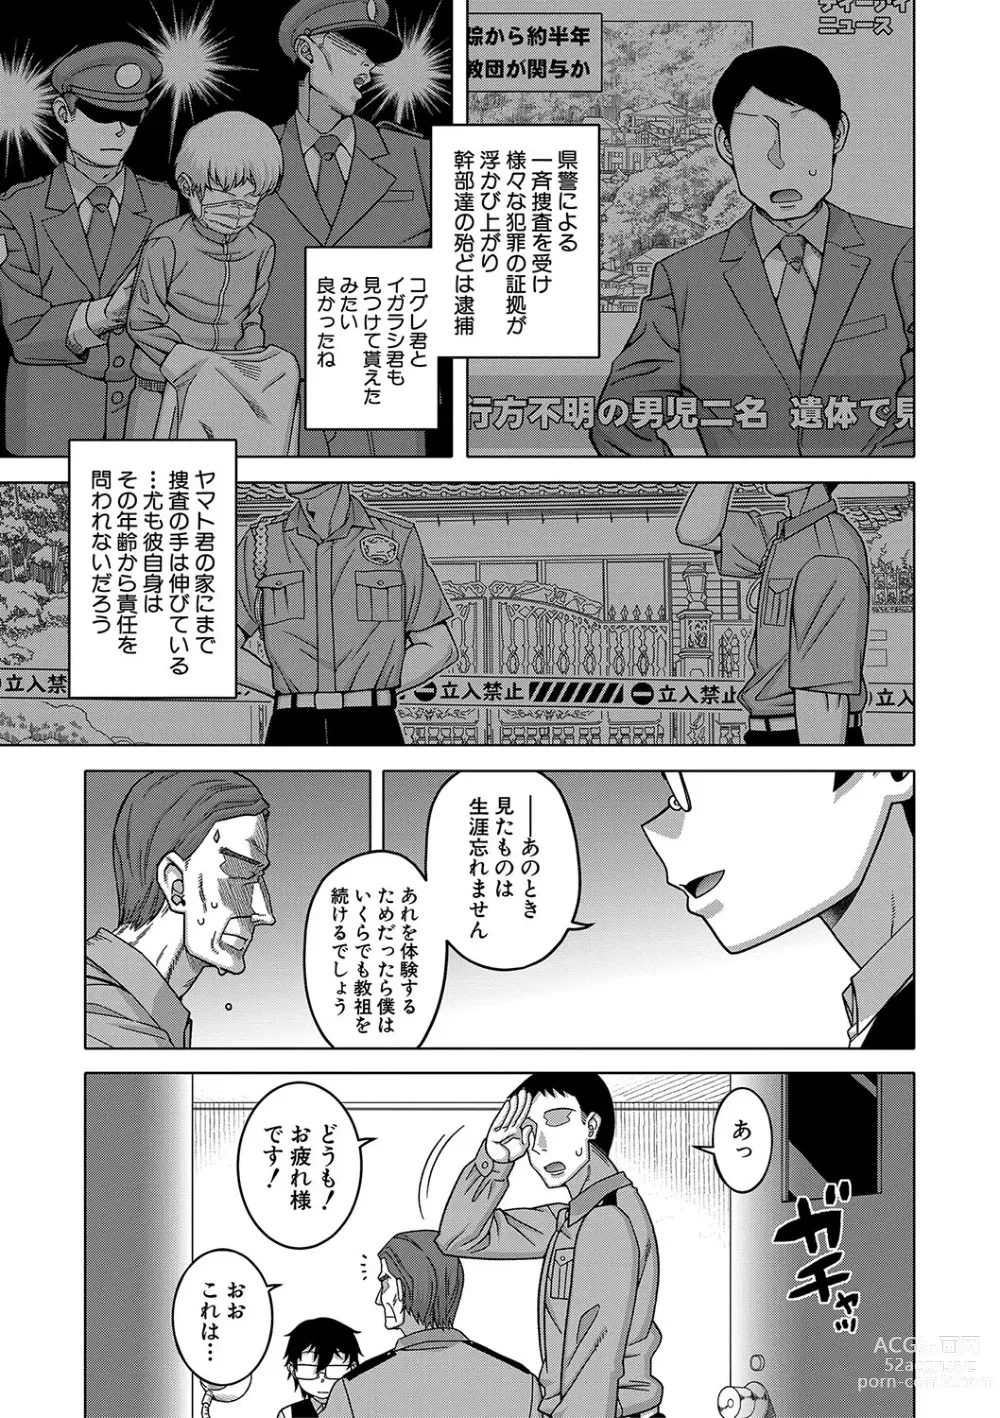 Page 212 of manga Kami-sama no Tsukurikata